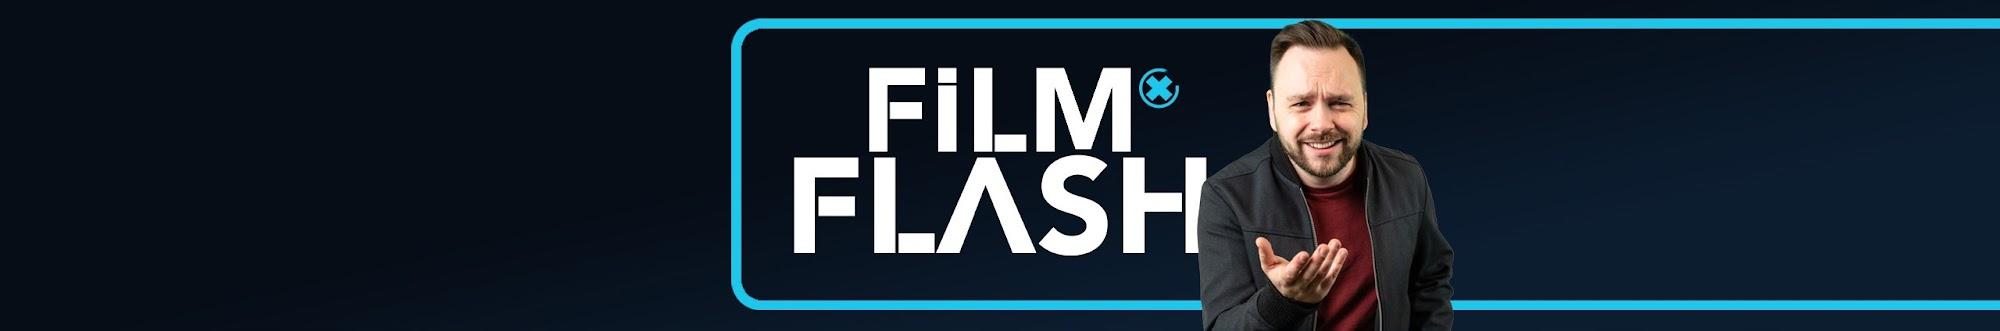 FilmFlash